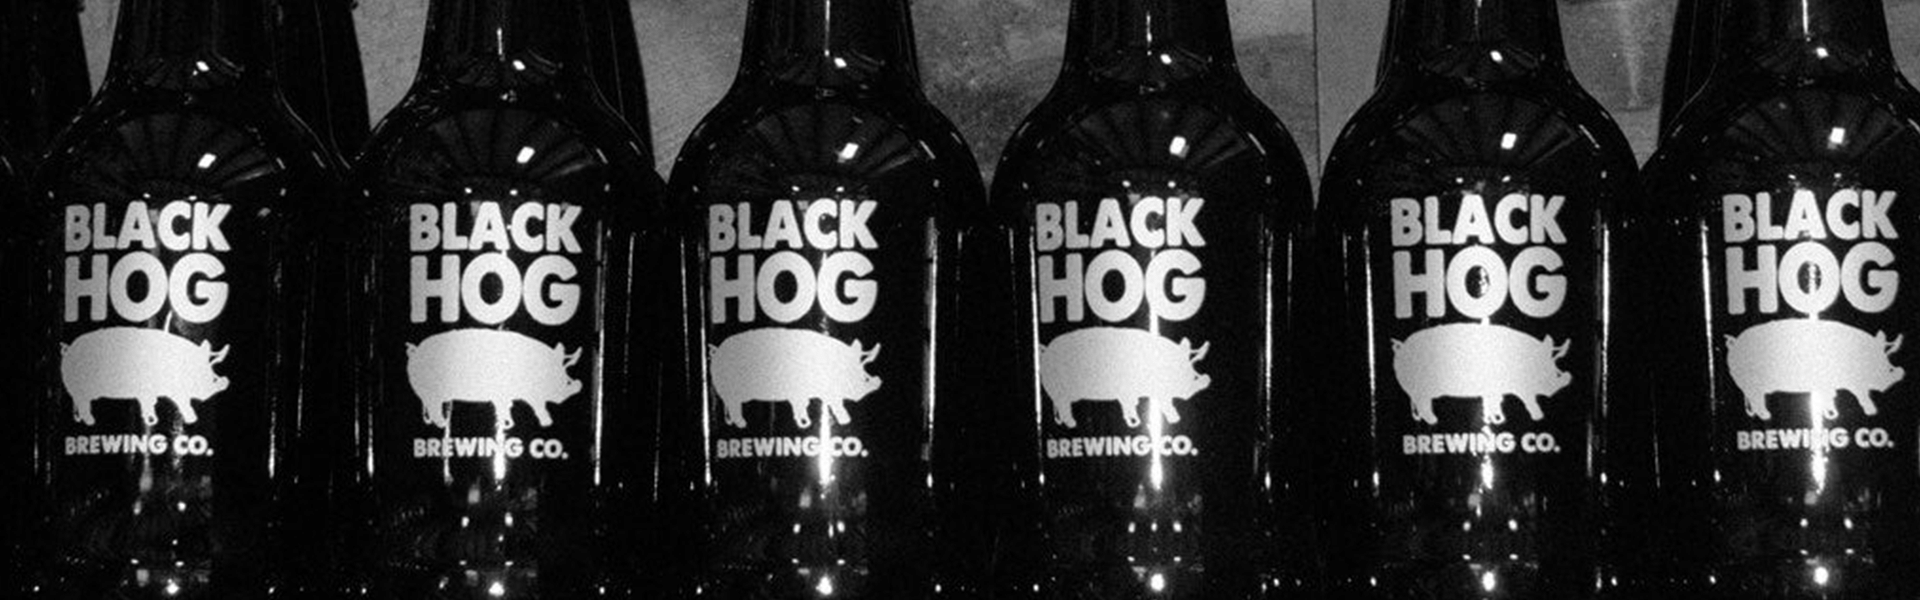 Black Hog Brewing